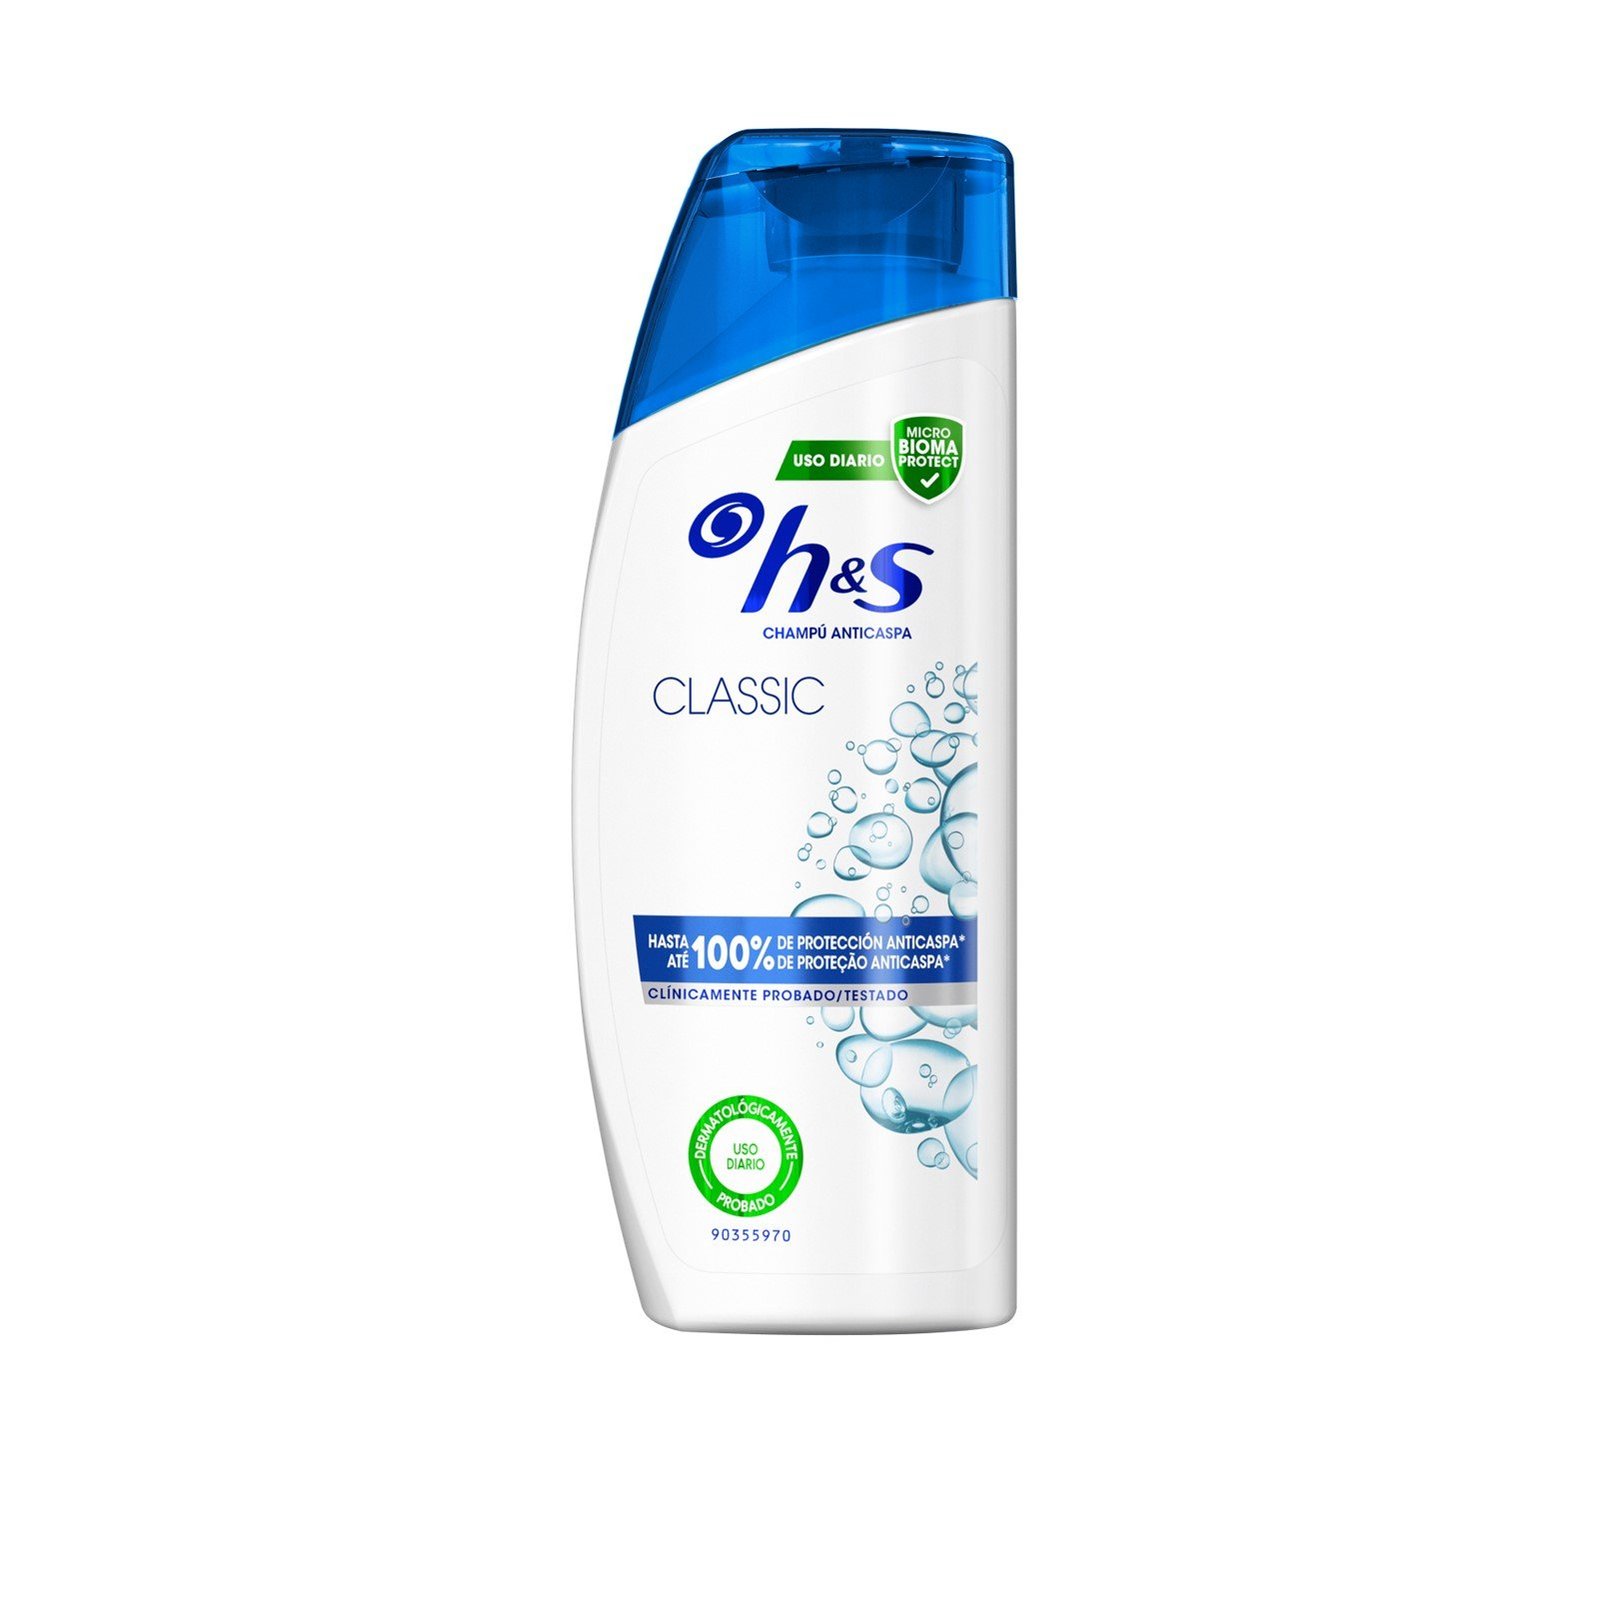 H&S Classic Clean Shampoo 600ml